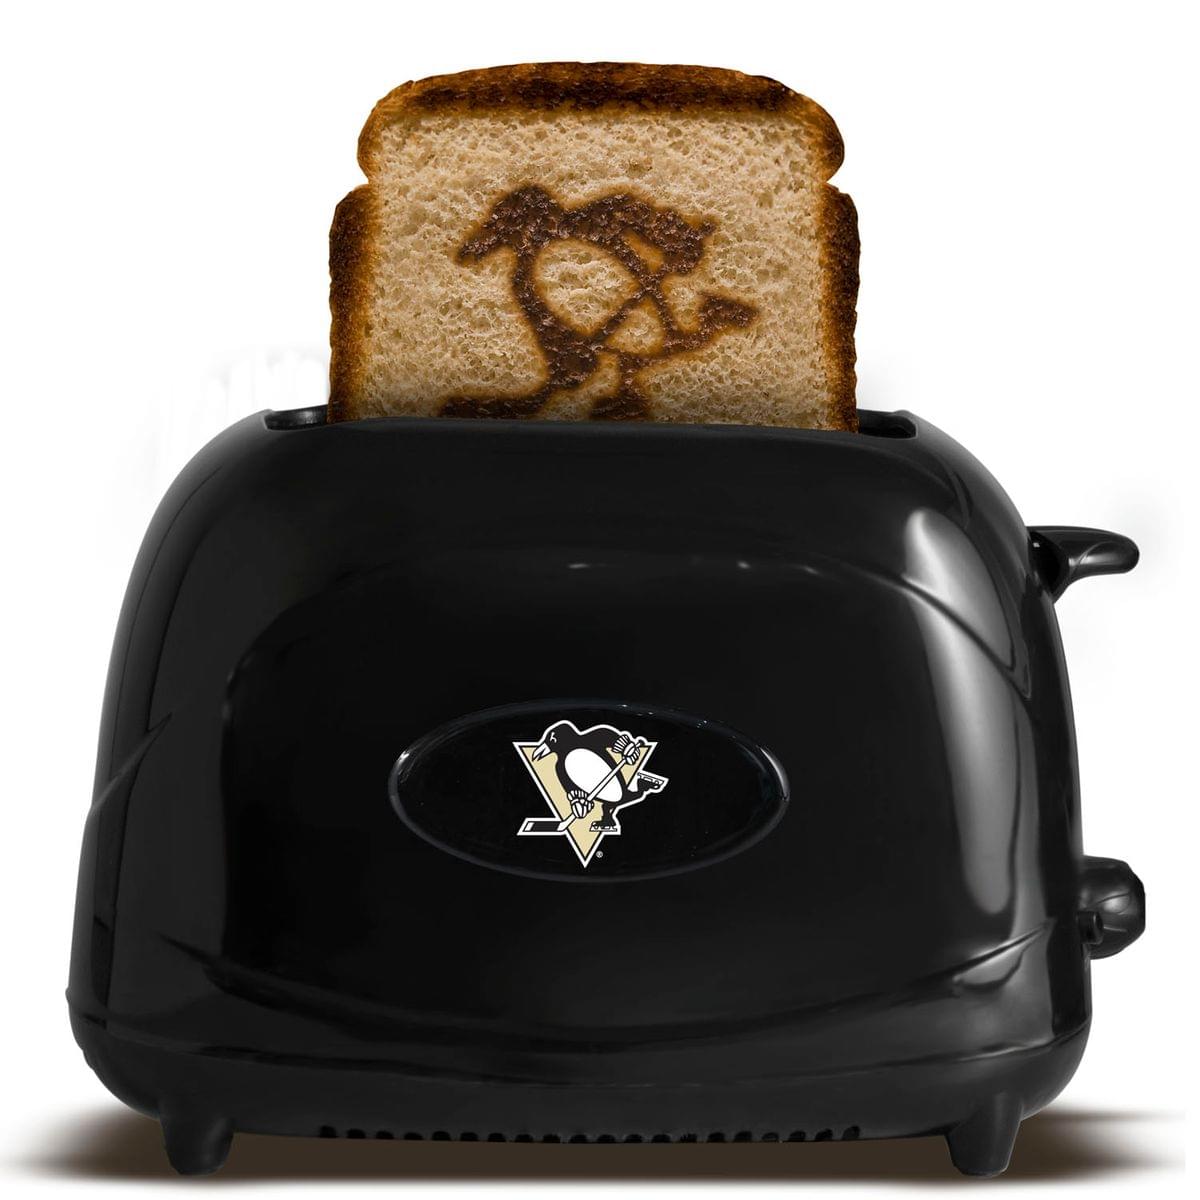 Pittsburgh Penguins NHL ProToast Elite Toaster